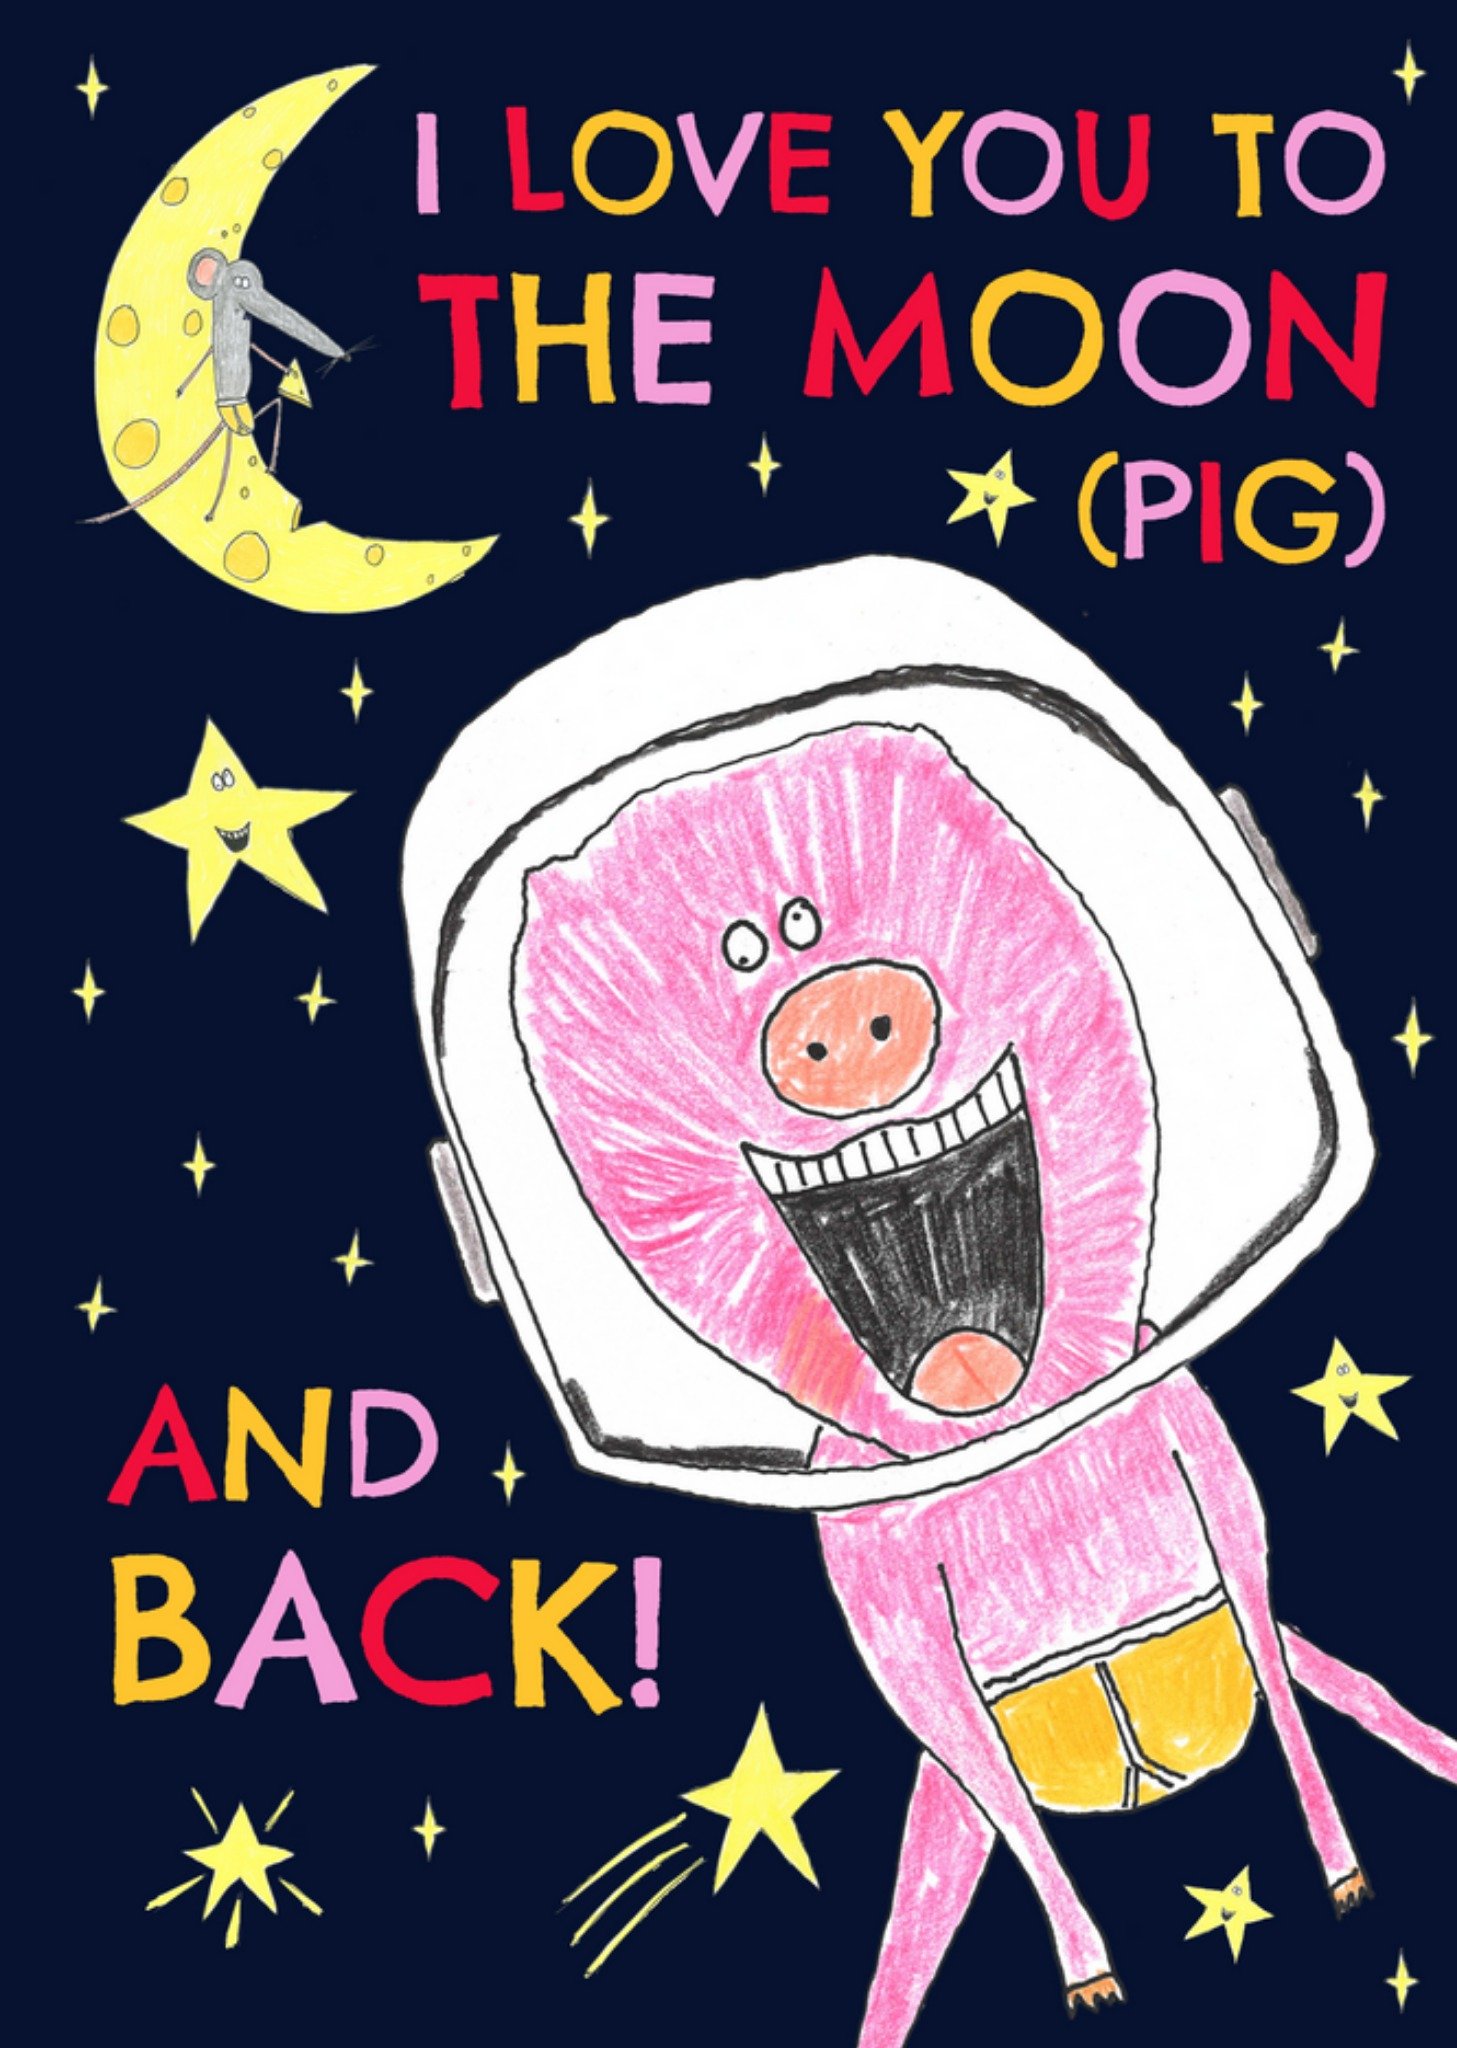 Hercule Van Wolfwinkle I Love You To The Moon (Pig) And Back Card Ecard